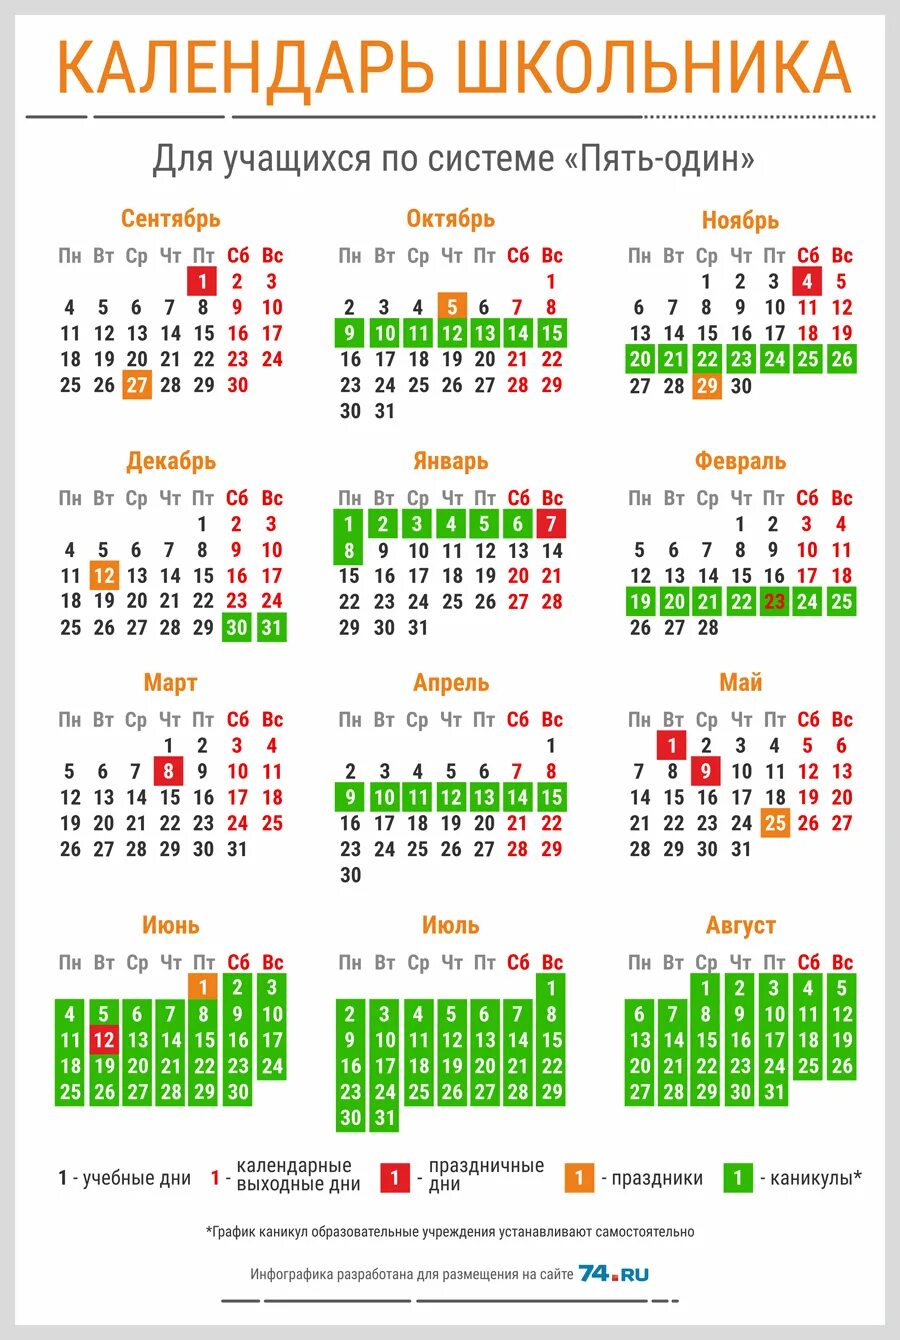 Календарь школьника. Выходные в мое в школах. Календарь каникул. Выходные дни для школьников.